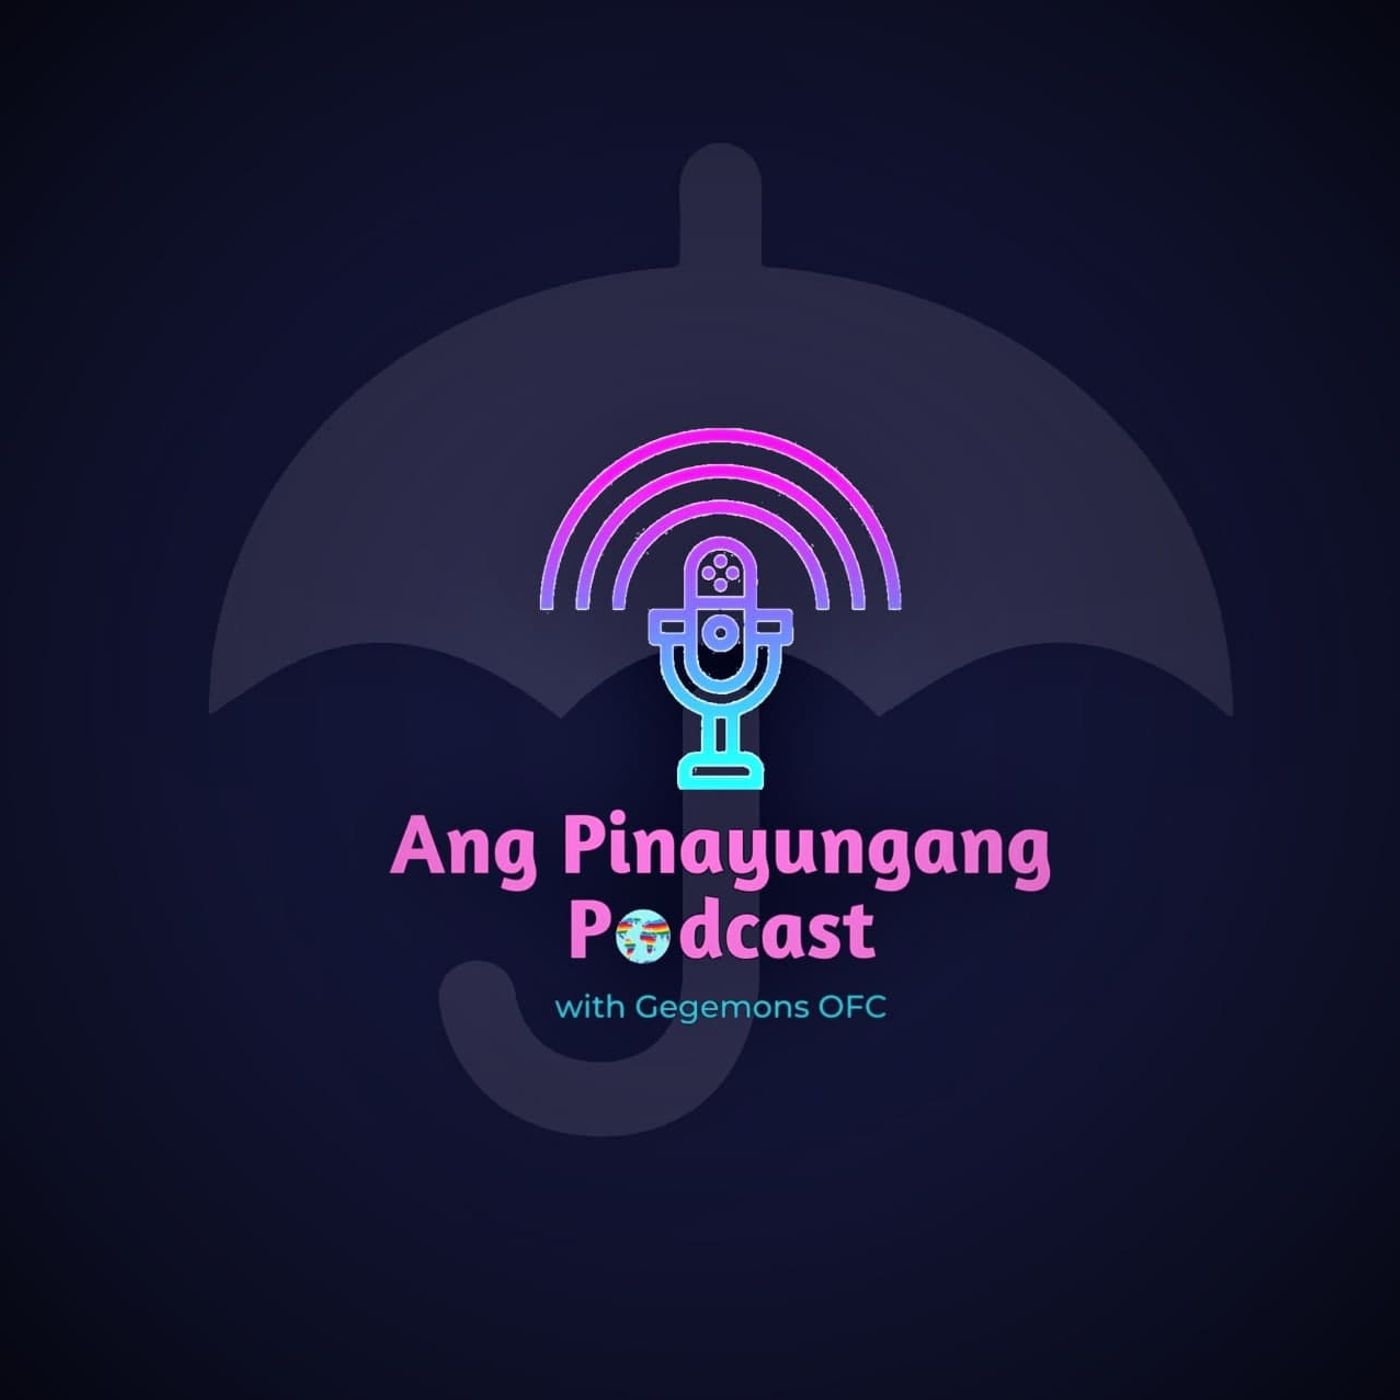 Ang Pinayungang Podcast